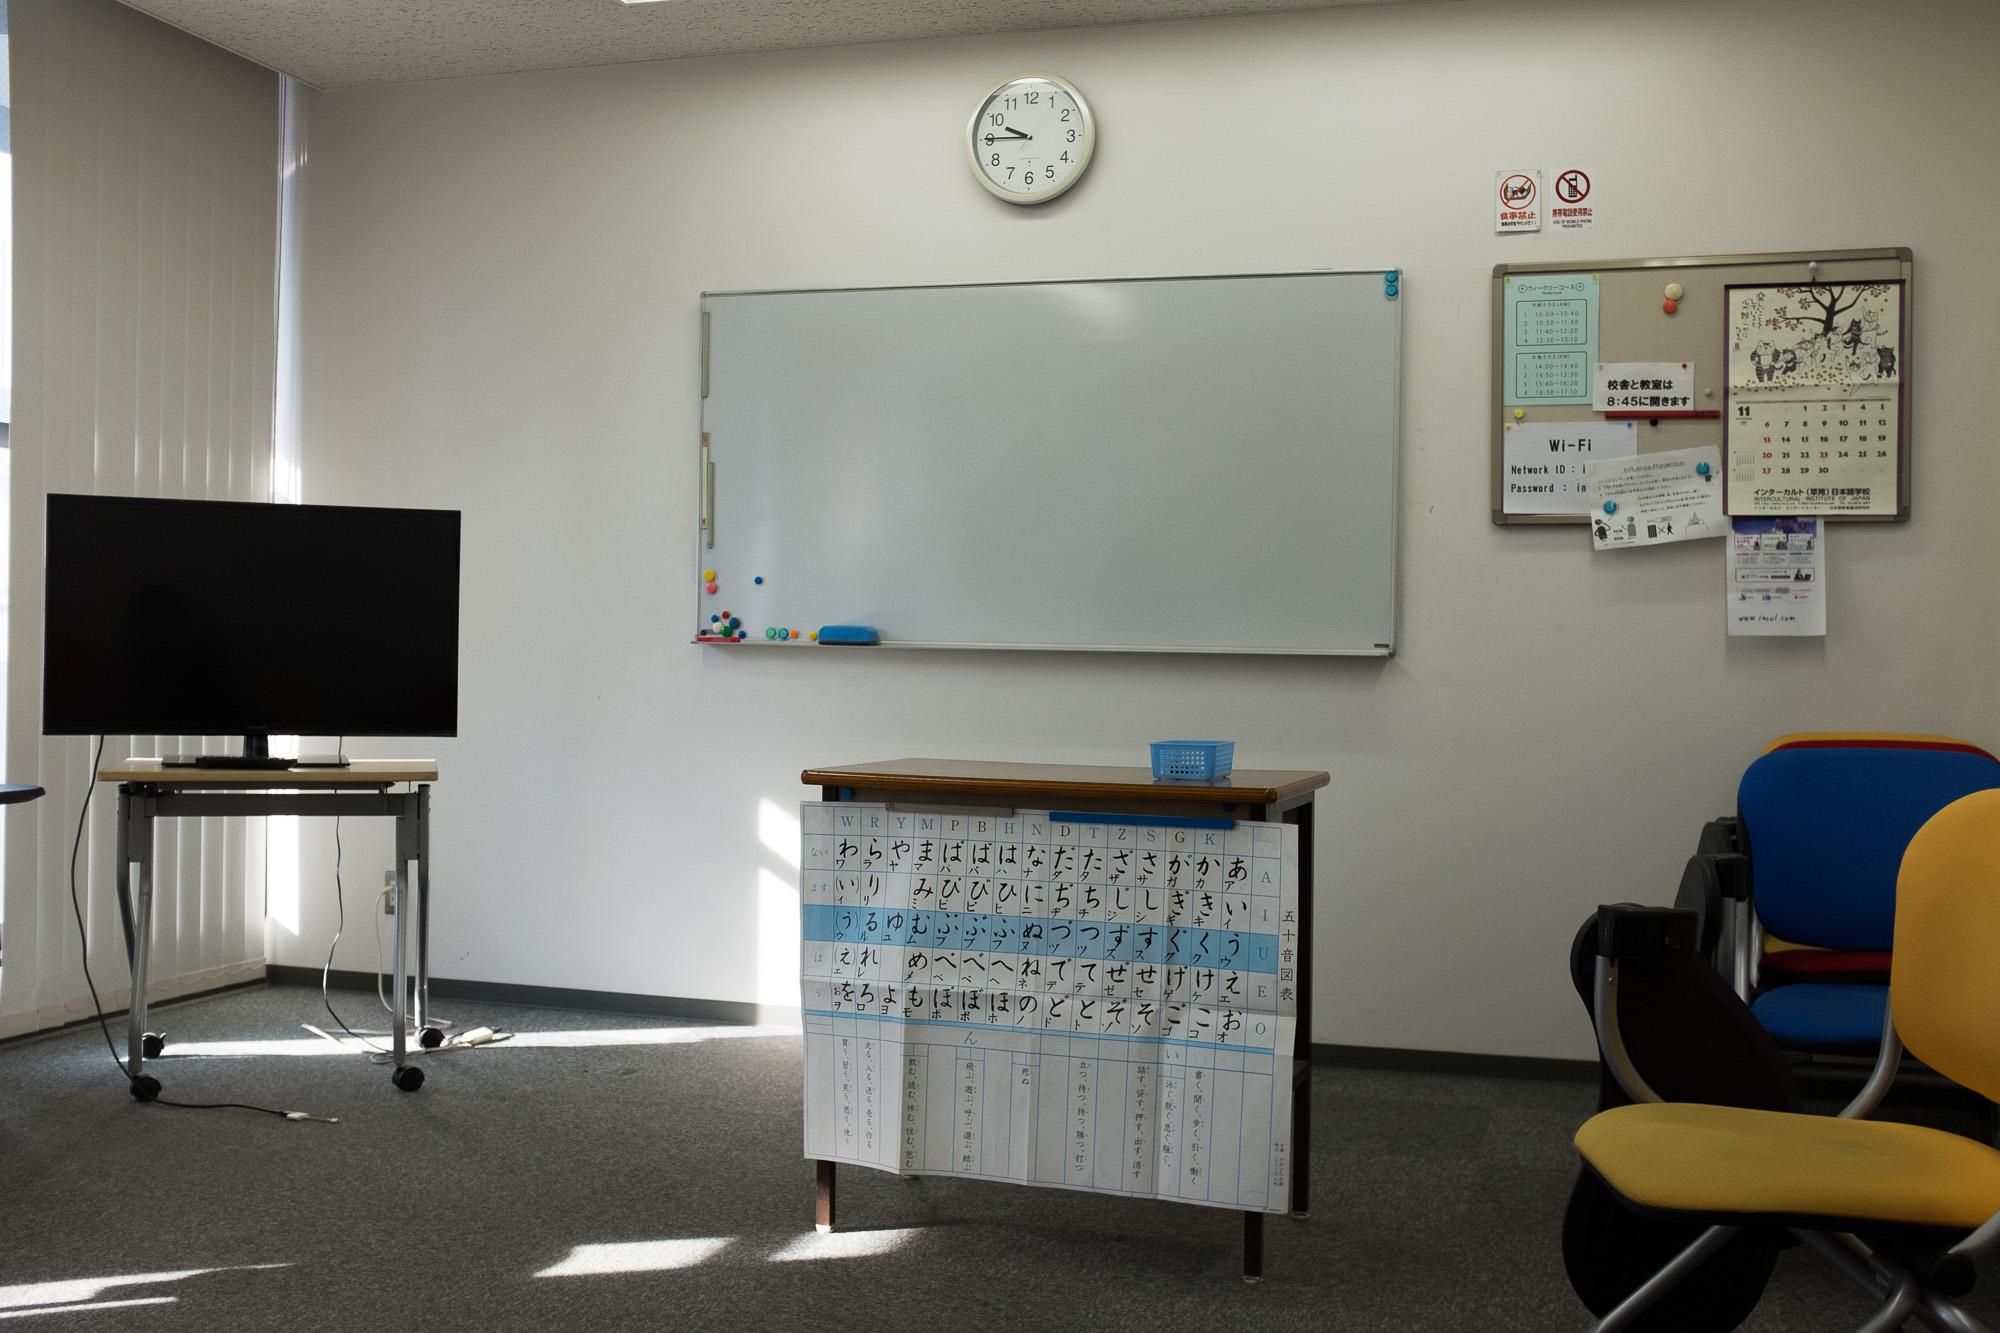 โฮมสเตย์ และ เรียนภาษาญี่ปุ่น ภายในห้องเรียน